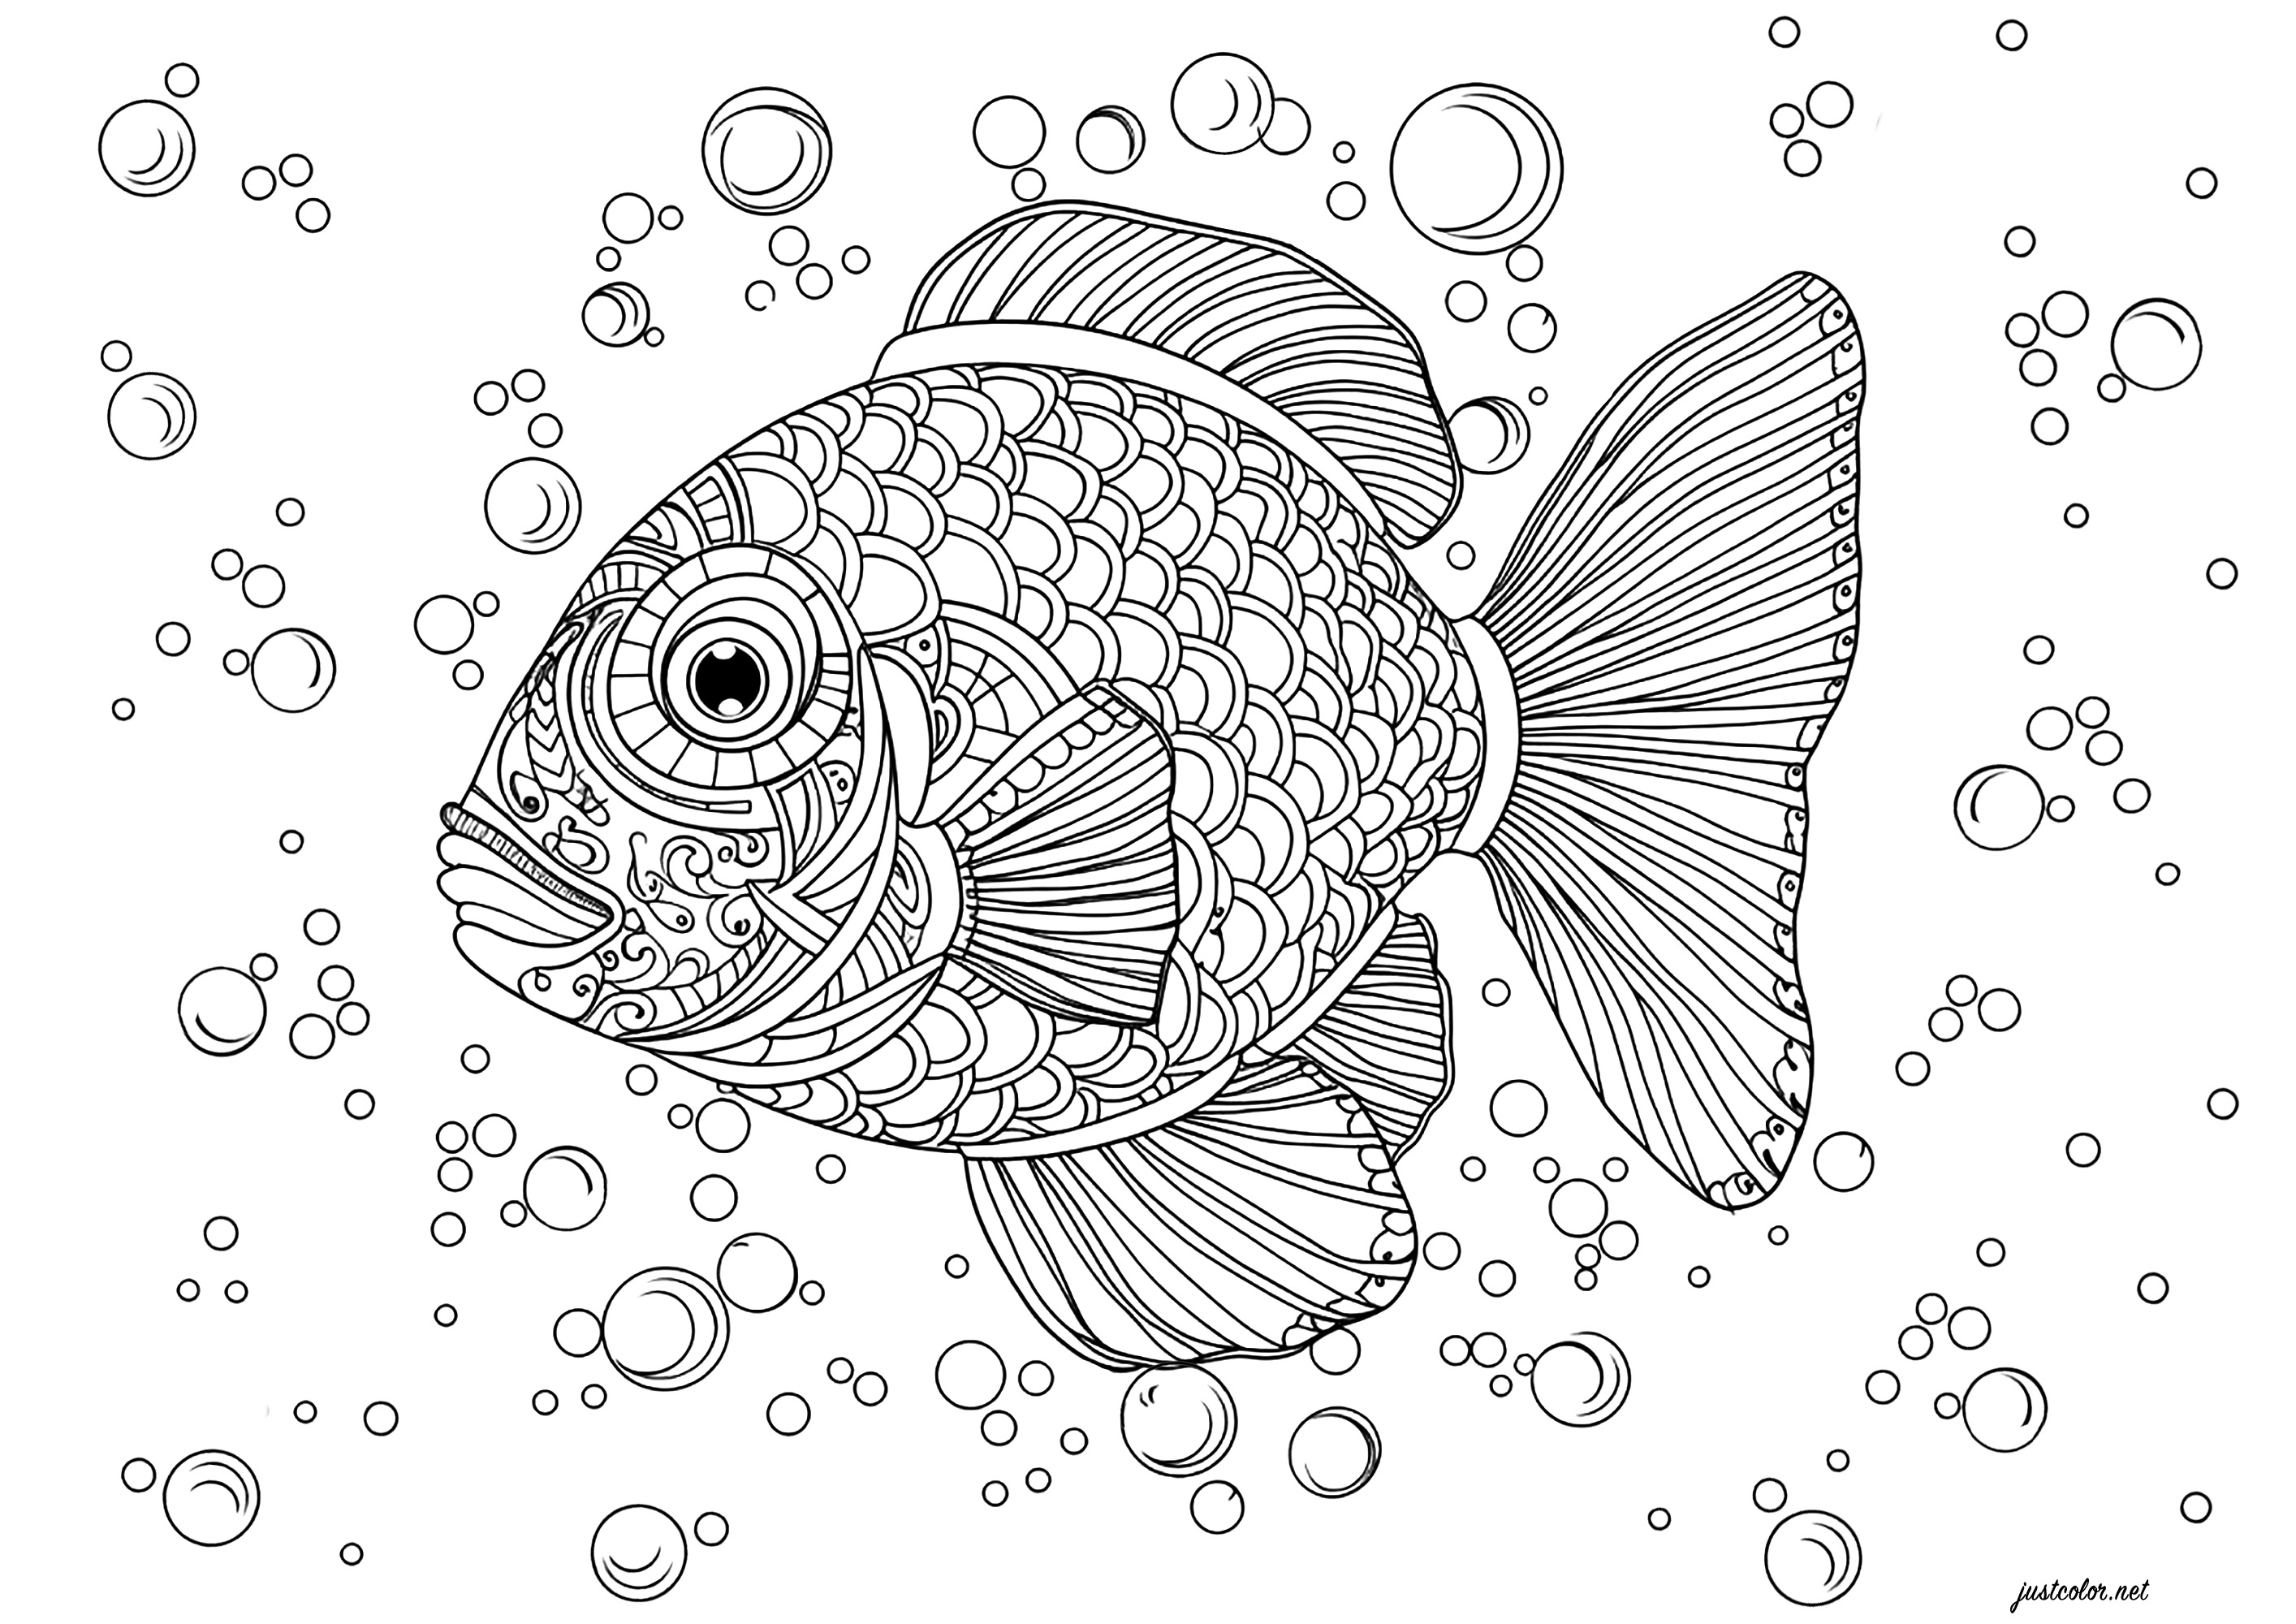 Un beau poisson plein d'écailles à colorier. Ce poisson plein de détails est entouré de bulles de différentes tailles